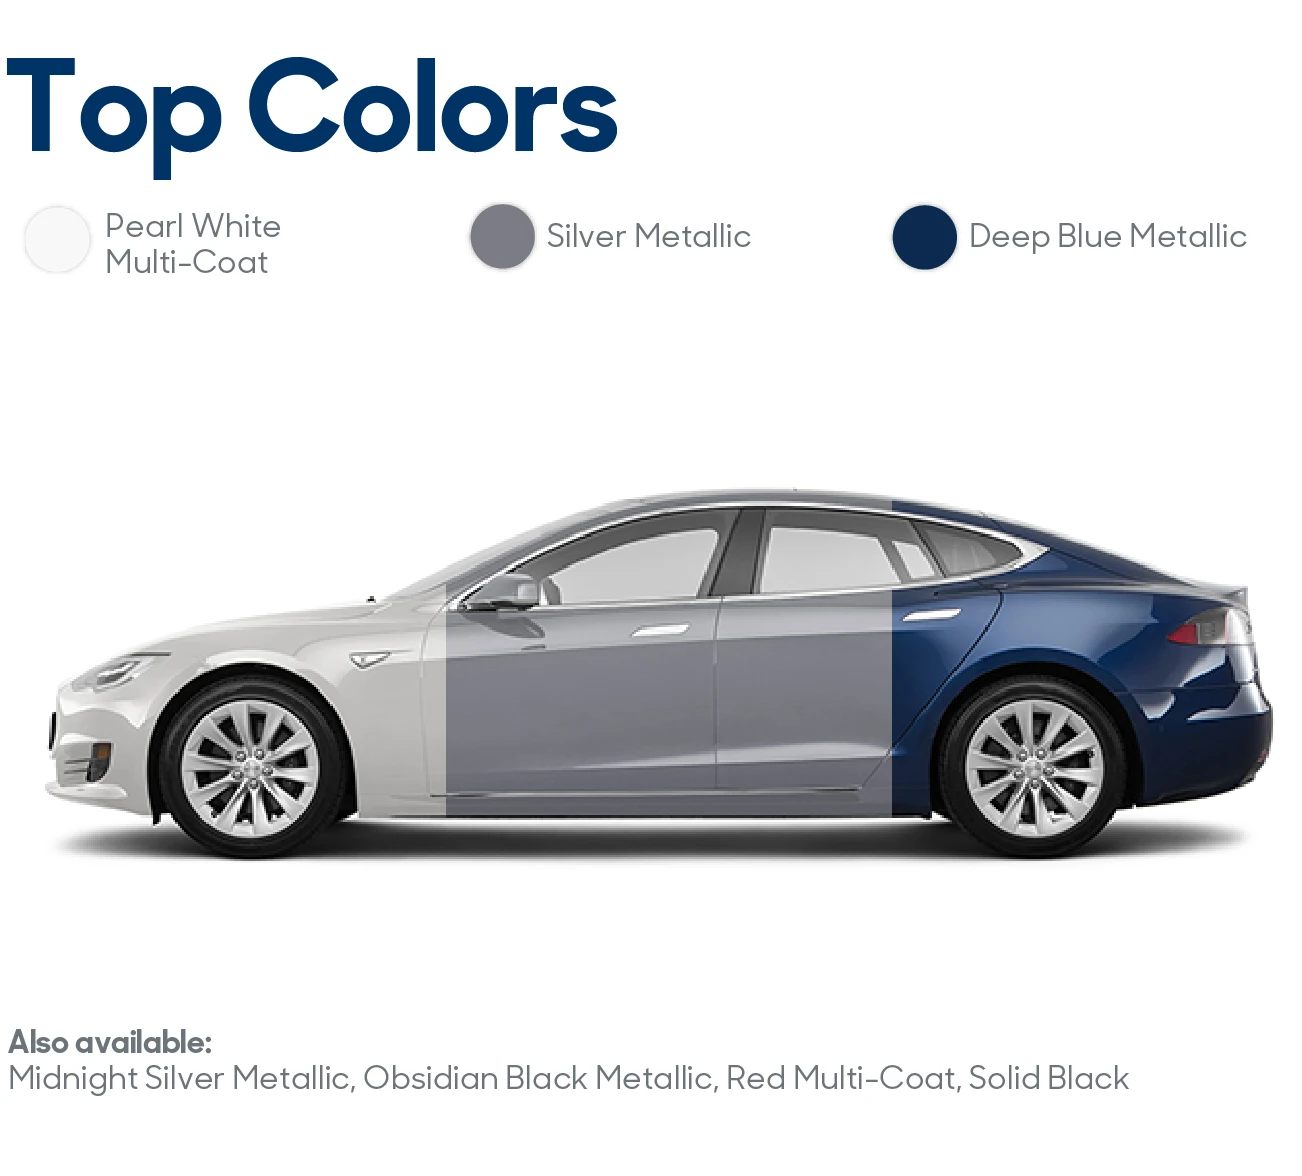 2017 Tesla Model S Review: Top Colors | CarMax